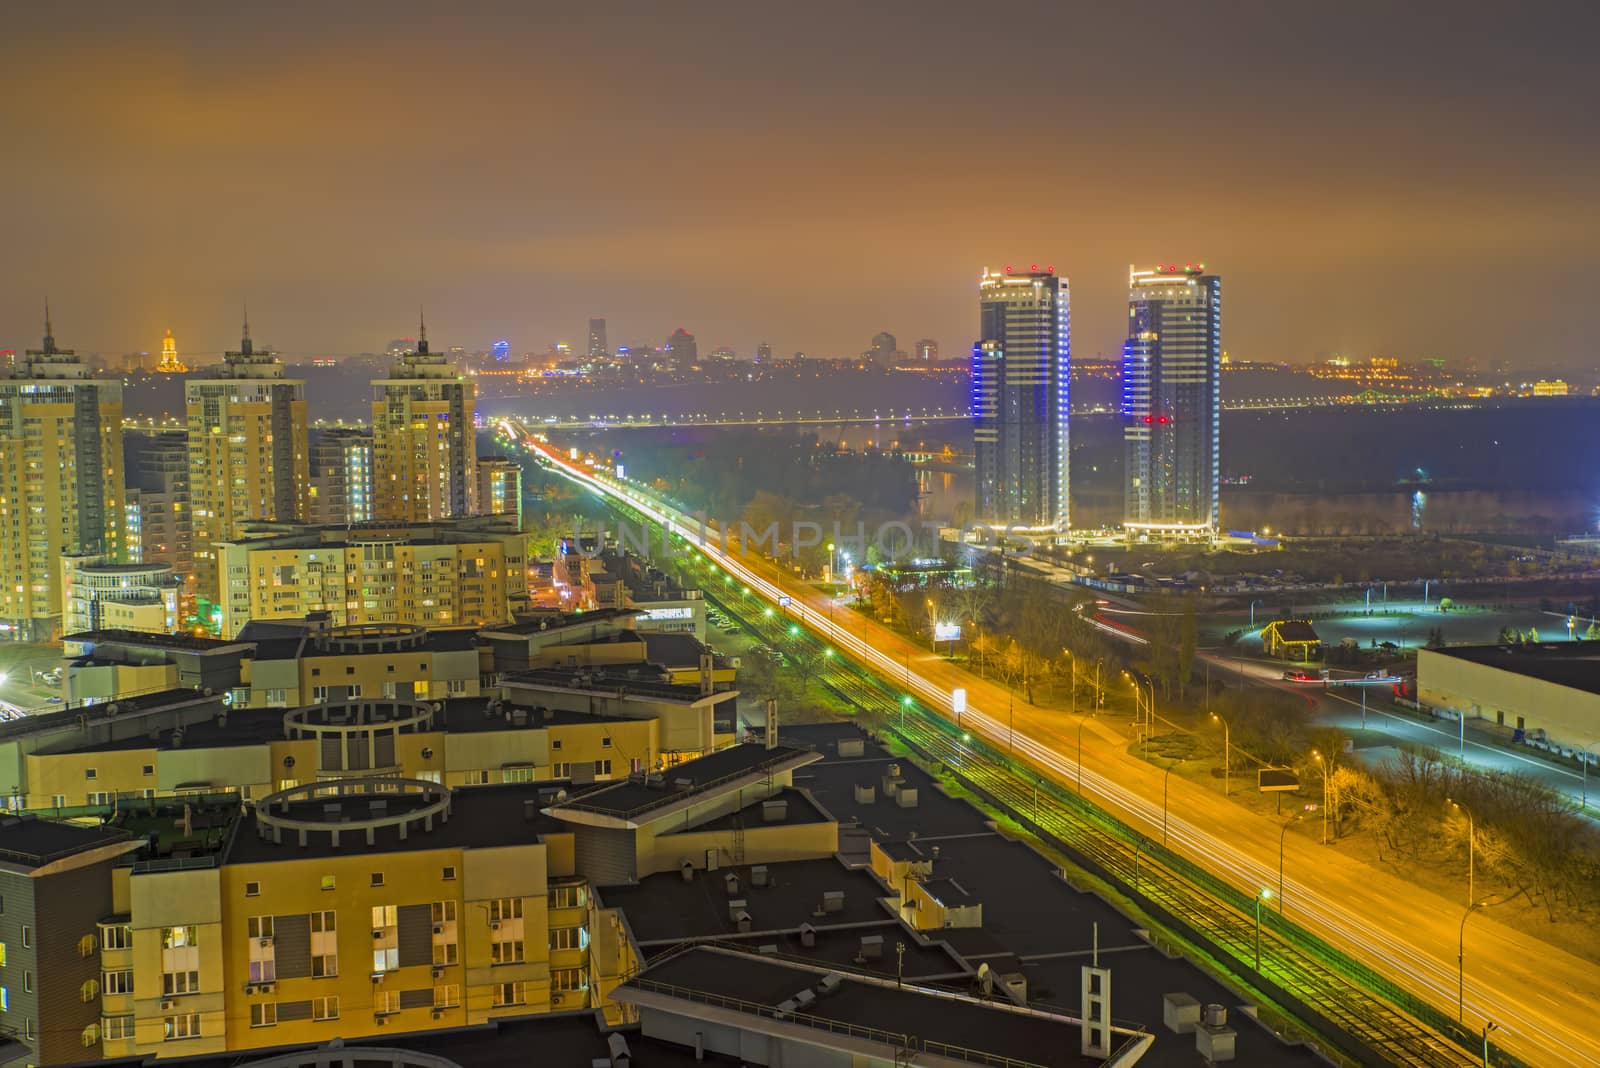 Aerial night view of residence buildings in Kiev, night ukrainean scene